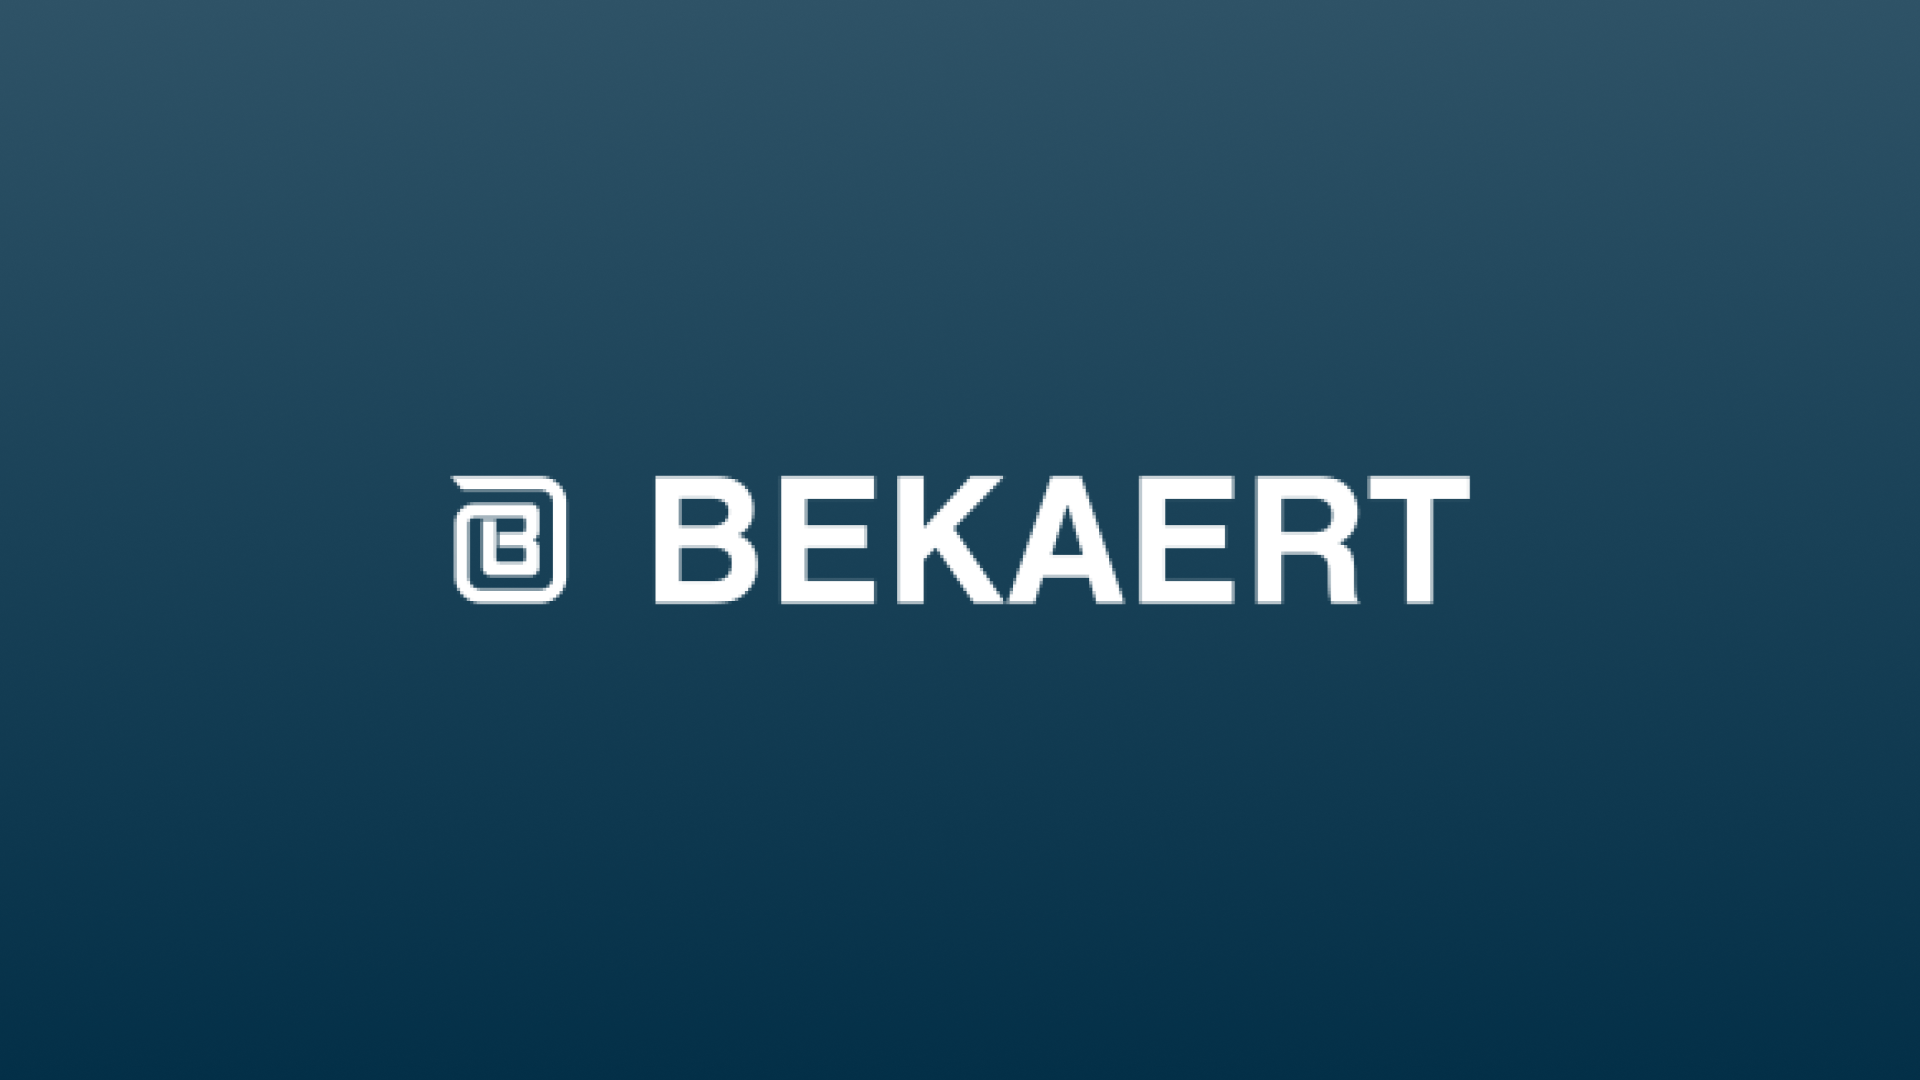 Bekaert, Şili ve Peru'daki çelik tel işletmelerinin satışı için onay aldı